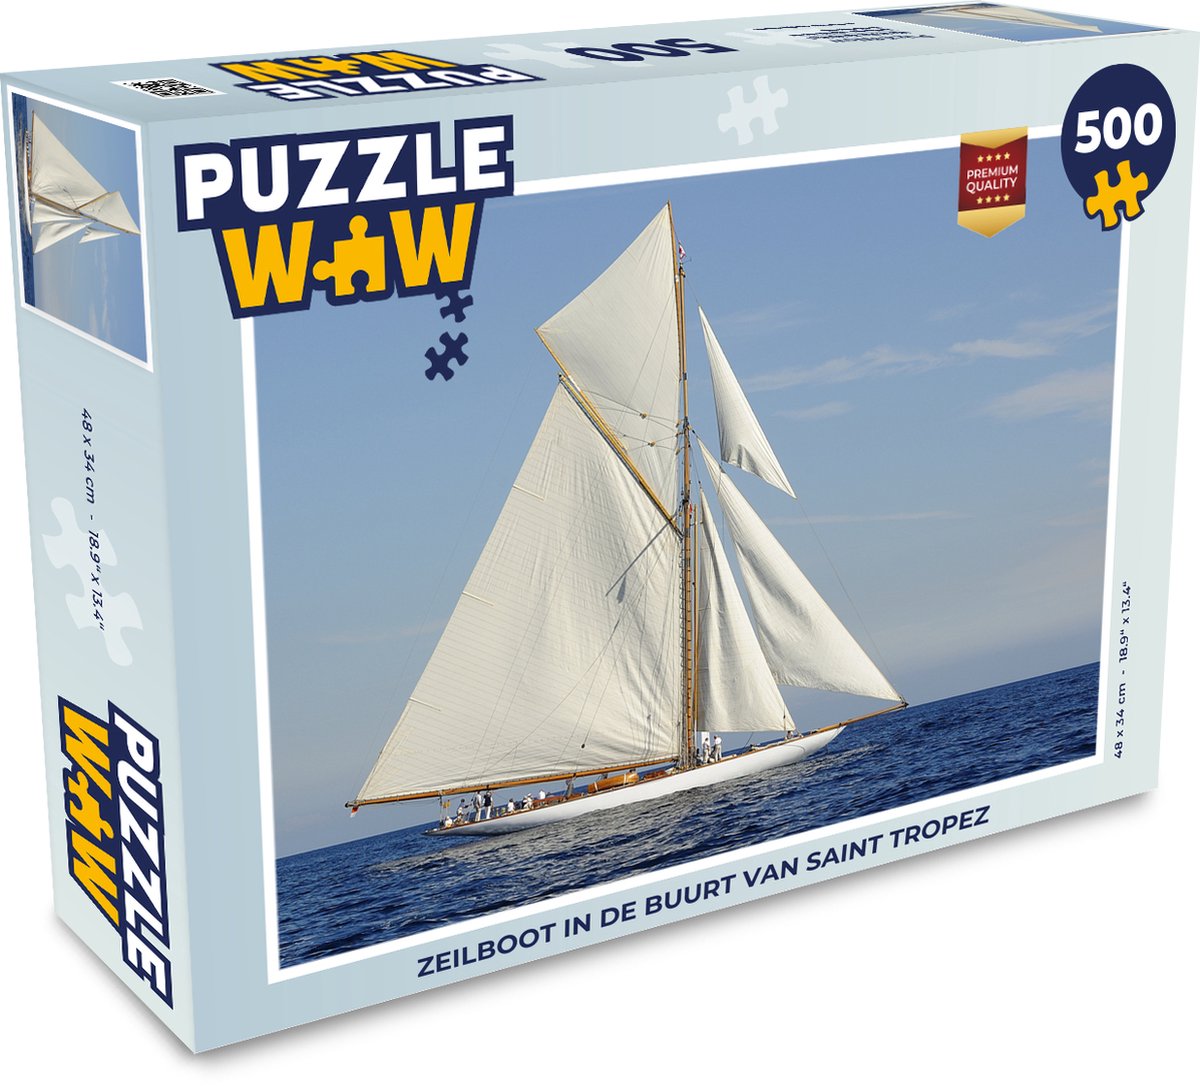 Afbeelding van product Puzzel 500 stukjes Zeilboot - Zeilboot in de buurt van Saint Tropez - PuzzleWow heeft +100000 puzzels